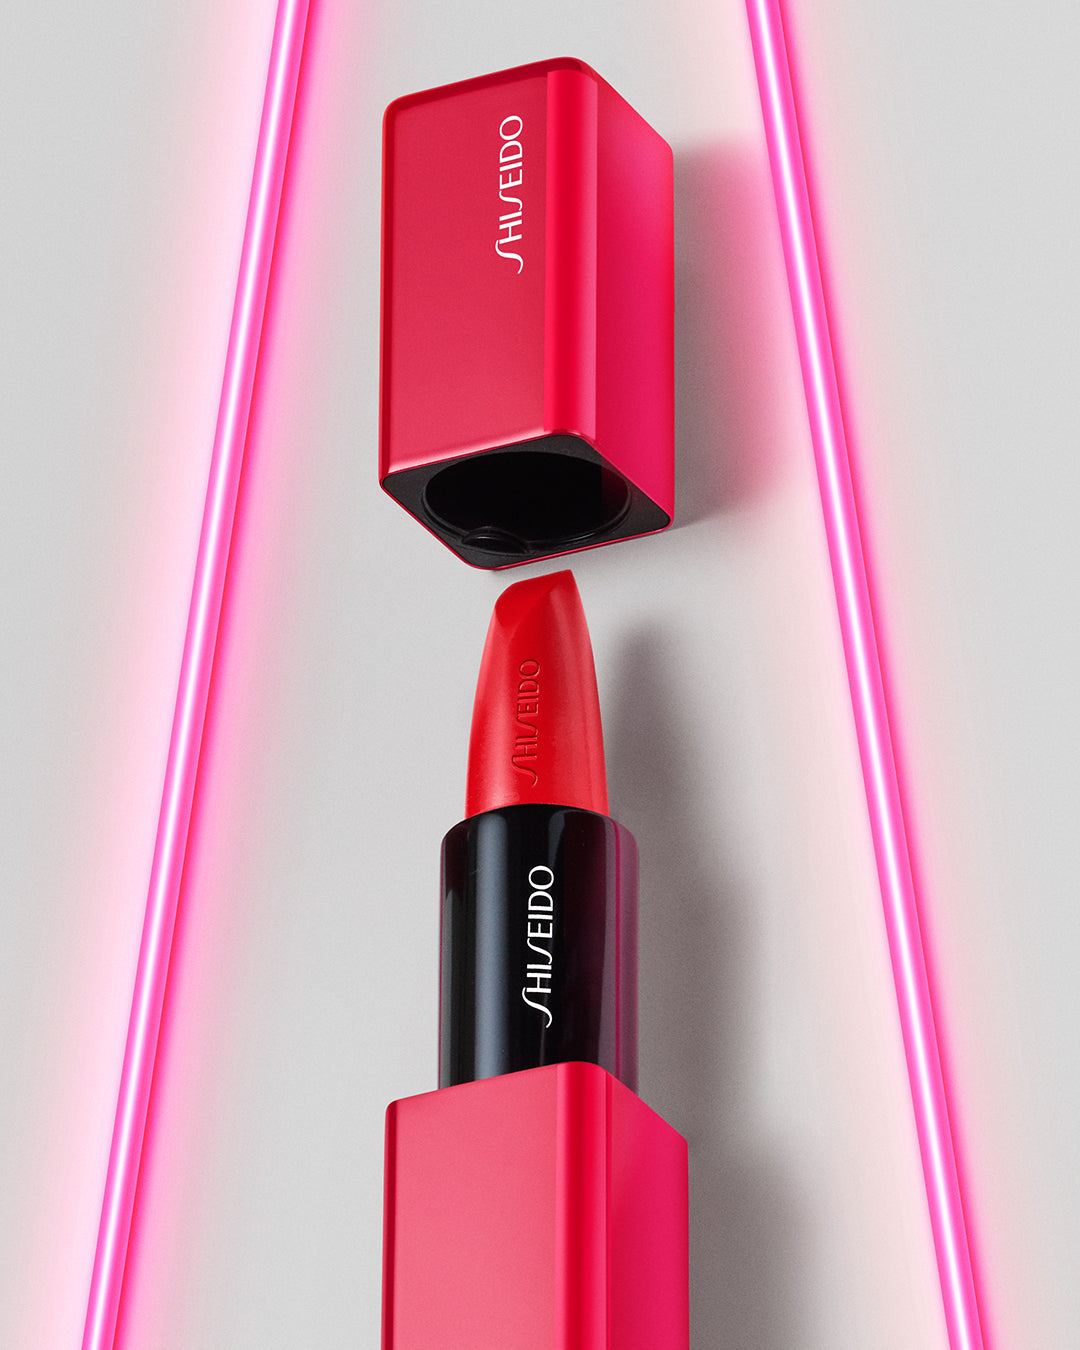 Son dưỡng môi Shiseido Water In Lip cho cả nam và nữ